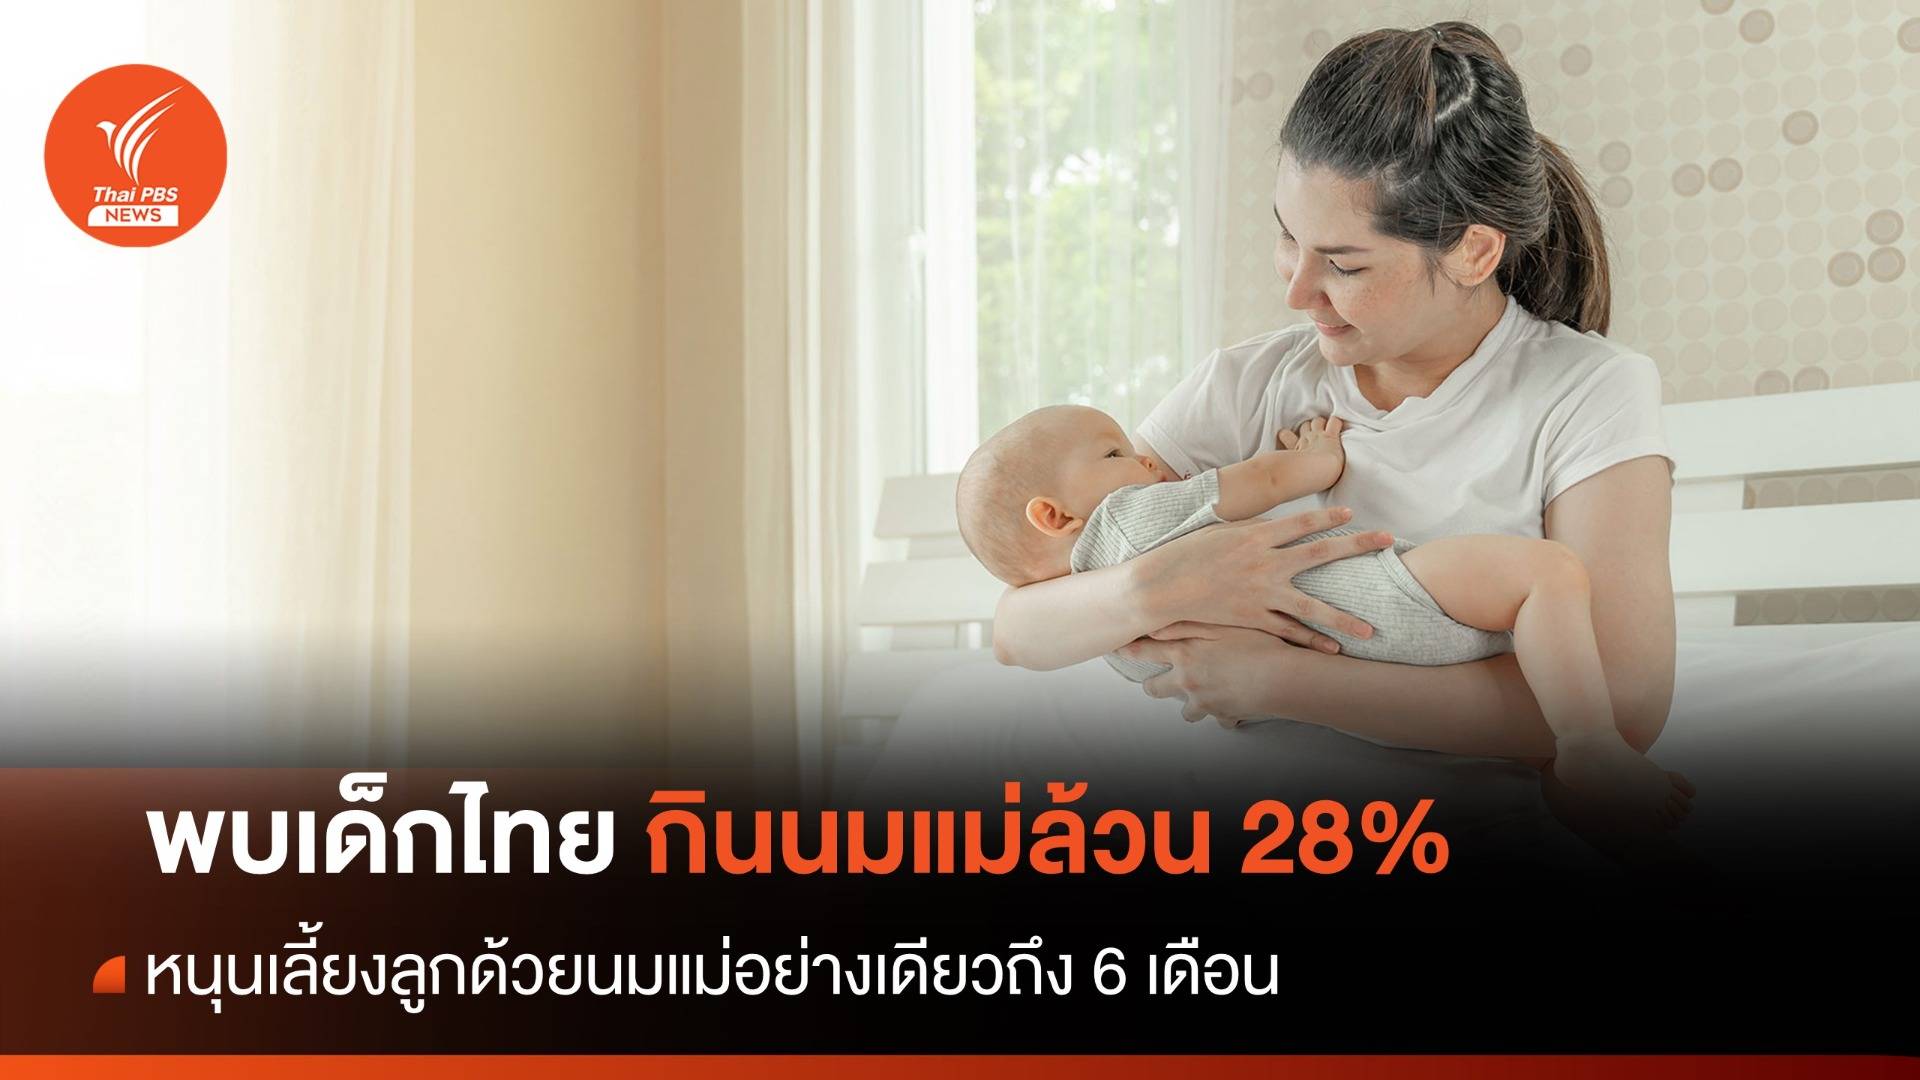 วันแม่ 2566 : หนุนเลี้ยงลูกด้วยนมแม่ล้วนถึง 6 เดือน หลังพบเด็กได้กินเพียง 28%